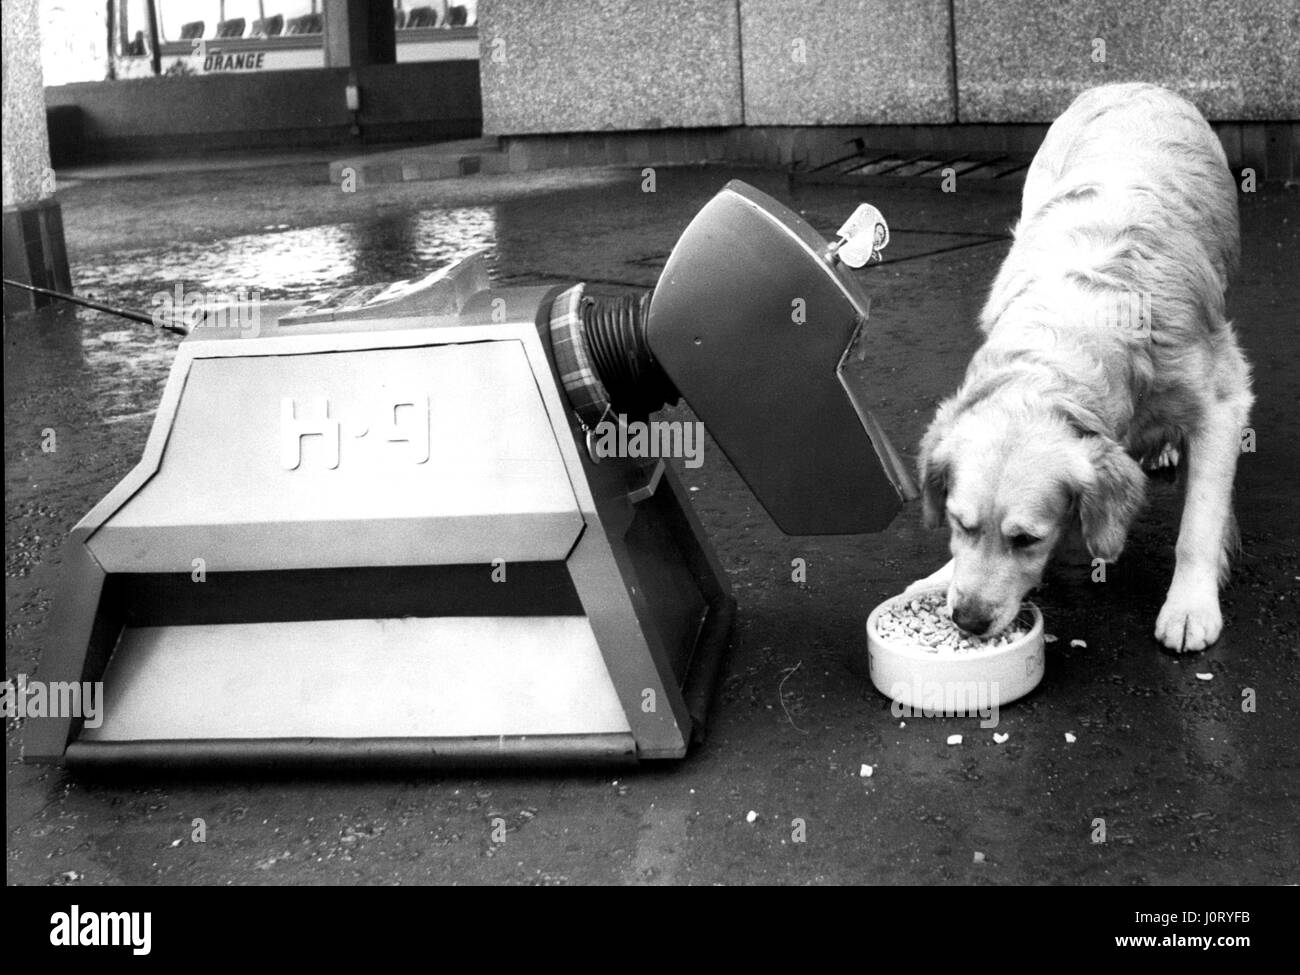 10 octobre 1977 - Crunch : Plat Chiens Robert et K9 Célébrez avec style. Spillers Winalot a célébré son cinquantième anniversaire, hier ( vendredi ) pour le son de bouchons de champagne sauter et deux chiens de la Grande-Bretagne de grignotage super plus gros biscuit canin. La pétillante à Spillers' direction a annoncé un plan de promotion spéciale pour le Jubilé d'Winalot lors d'une conférence de presse sur une période péniche amarrée à Londres, Katherine's Dock. Les plans de consommation comprend une compétition avec quatre voitures Ford Fiesta d'or parmi les prix, et le lancement de la publicité TV la semaine prochaine. Deux nouvelles publicités ar Banque D'Images